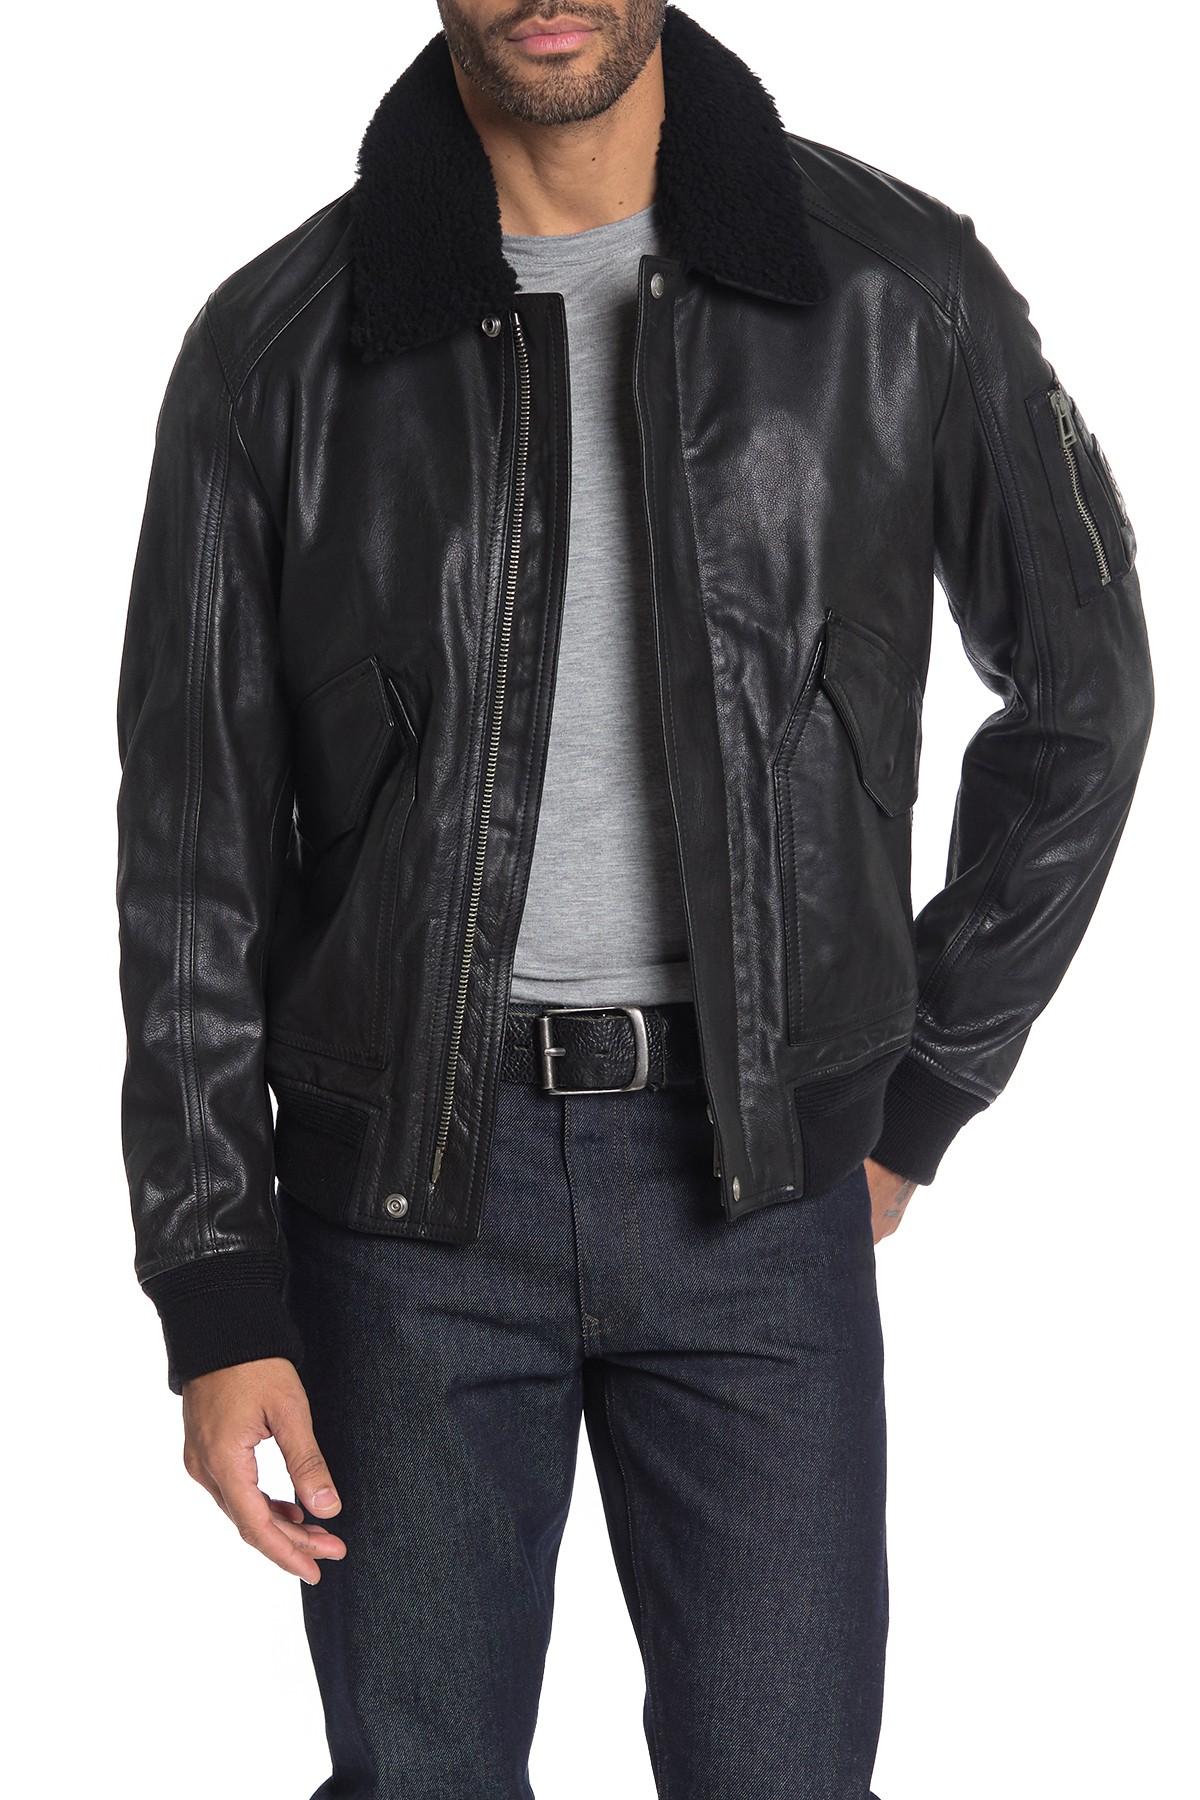 Belstaff Arne Genuine Shearling Leather Bomber Jacket in Black/Black  (Black) for Men - Lyst